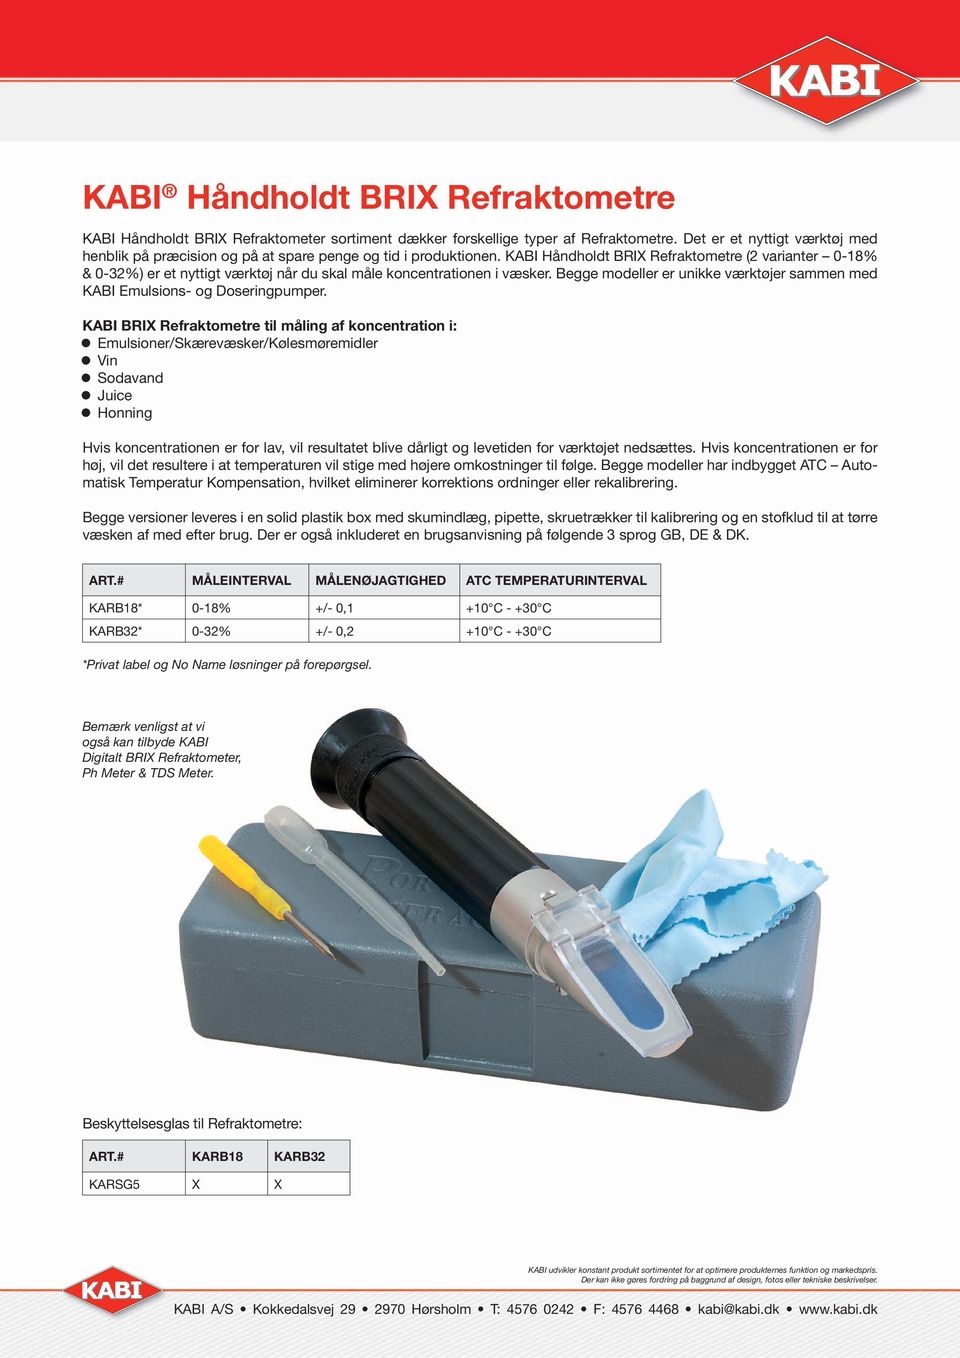 KABI Håndholdt BRI Refraktometre (2 varianter 0-18% & 0-32%) er et nyttigt værktøj når du skal måle koncentrationen i væsker.